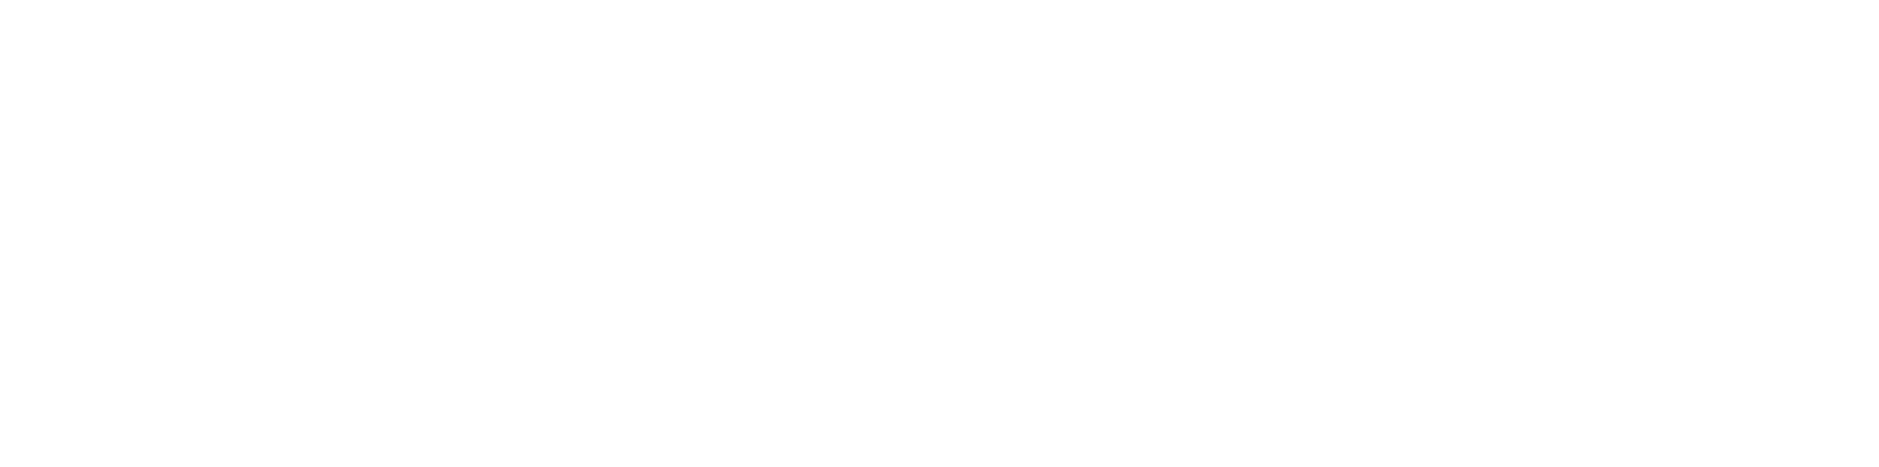 ValetLiving-logo-white